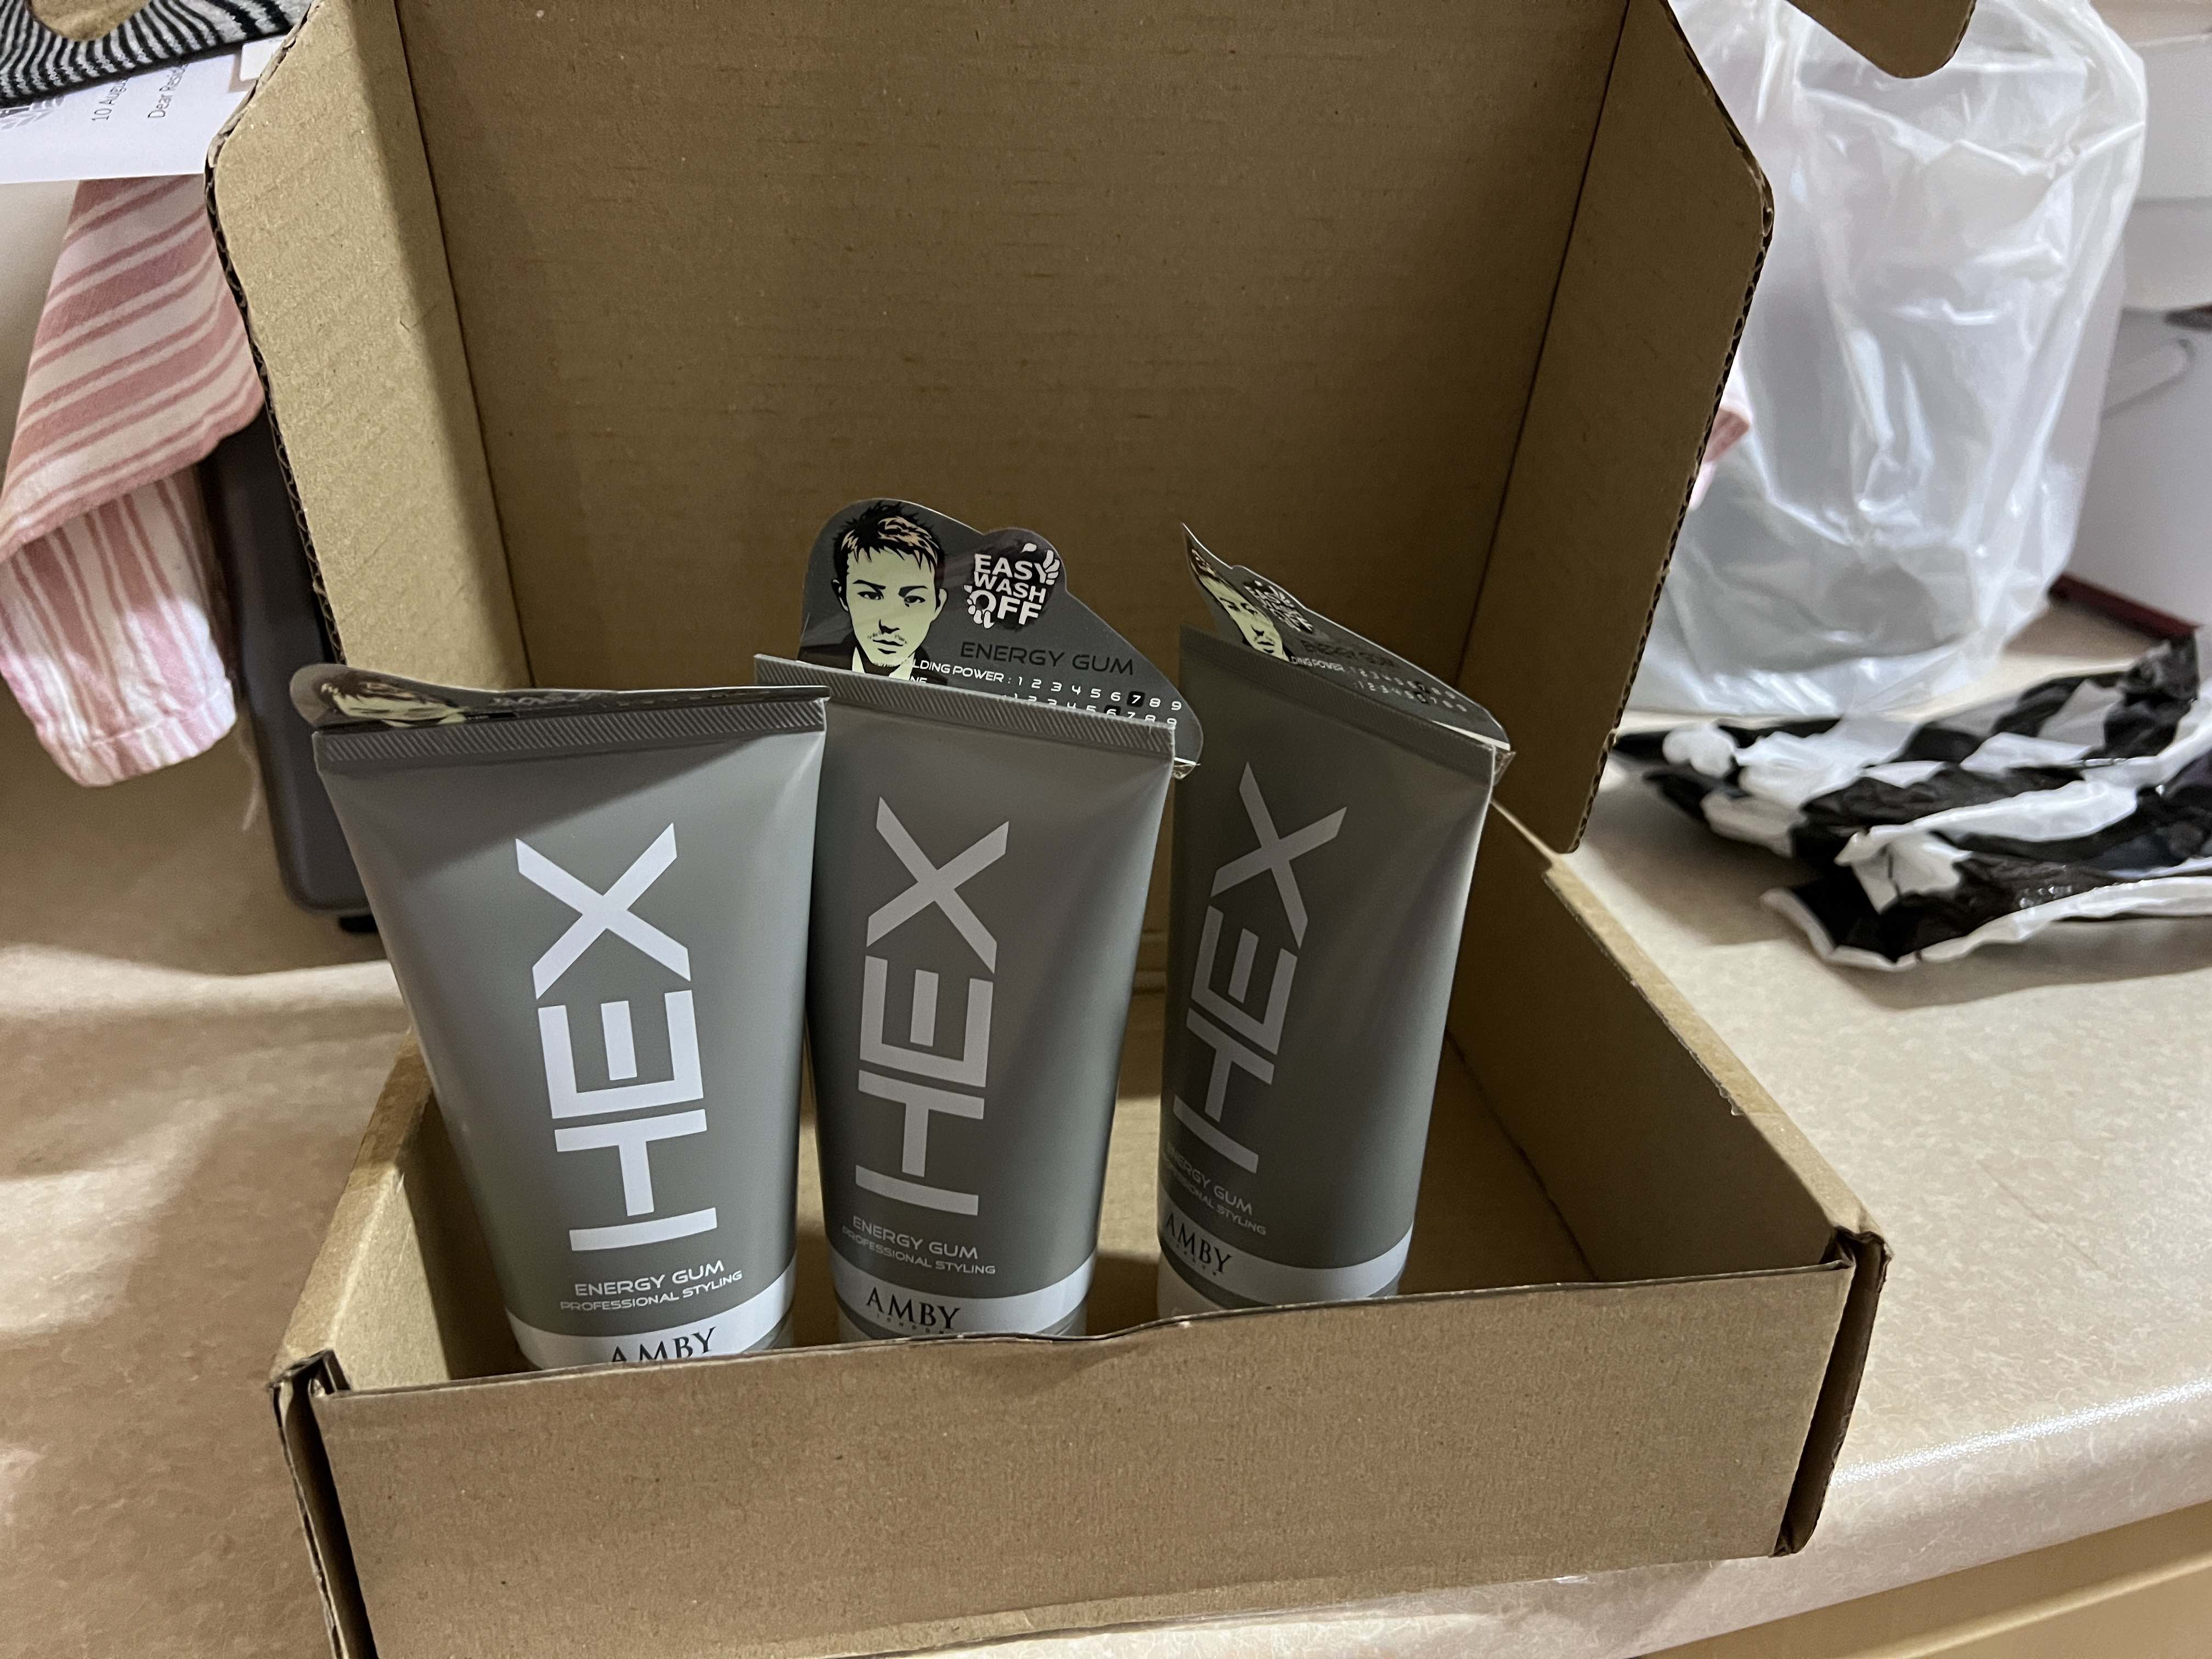 Bundle of 3] Amby Hex Hair Styling Wax 5.3oz (150g) - Energy Gum (Grey)